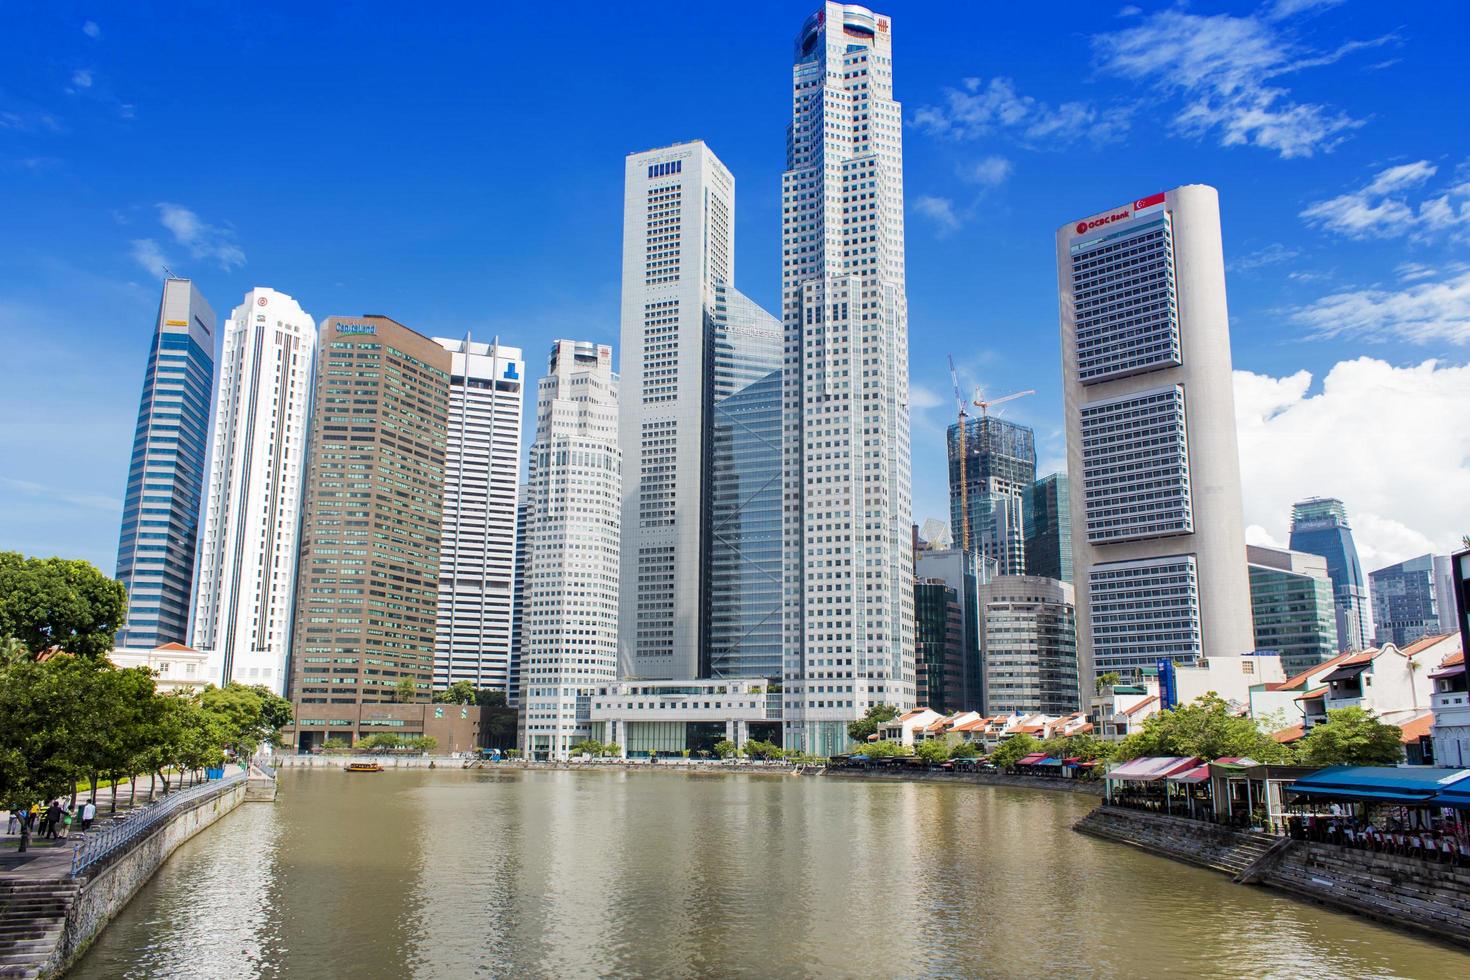 singapur, 2014 - modernos rascacielos en el distrito central de negocios de singapur. es el centro de las actividades financieras de Singapur con muchos edificios financieros importantes y significativos. foto